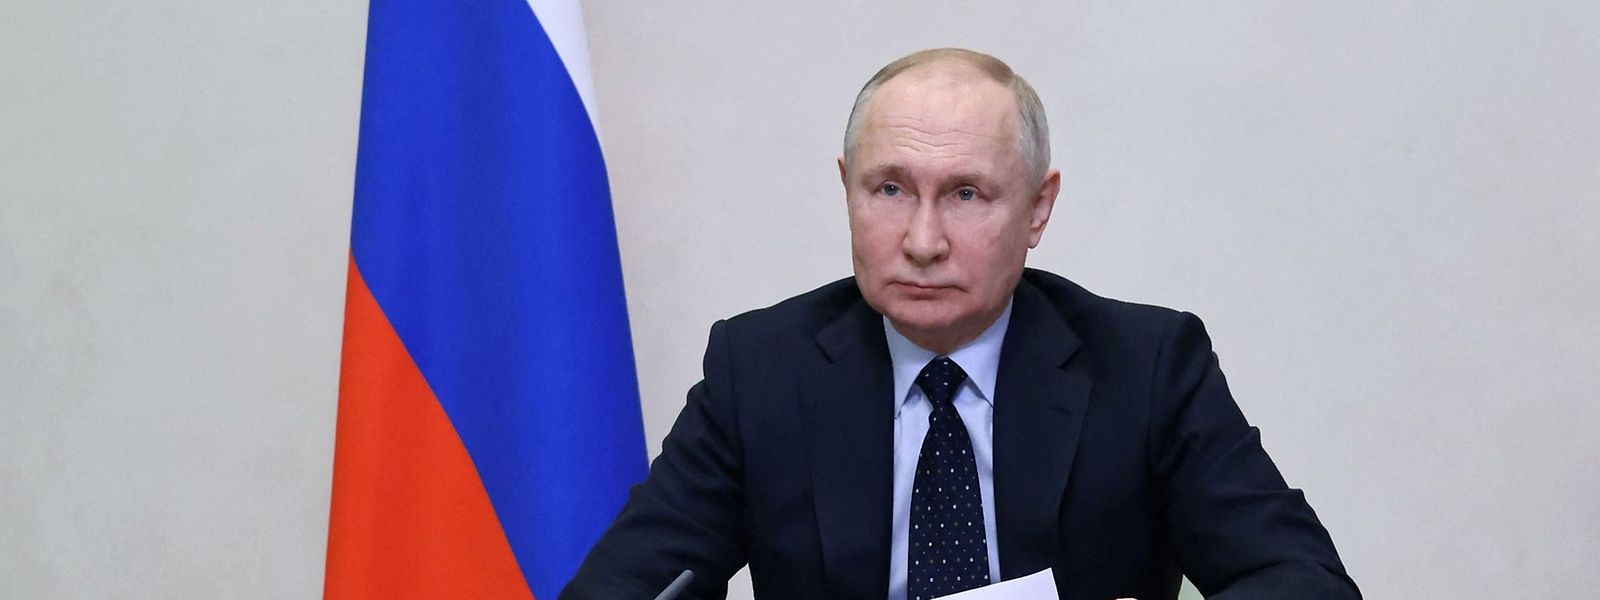 Der russische Präsident Wladimir Putin befindet sich seit Jahren auf Konfrontationskurs gegenüber dem Westen.